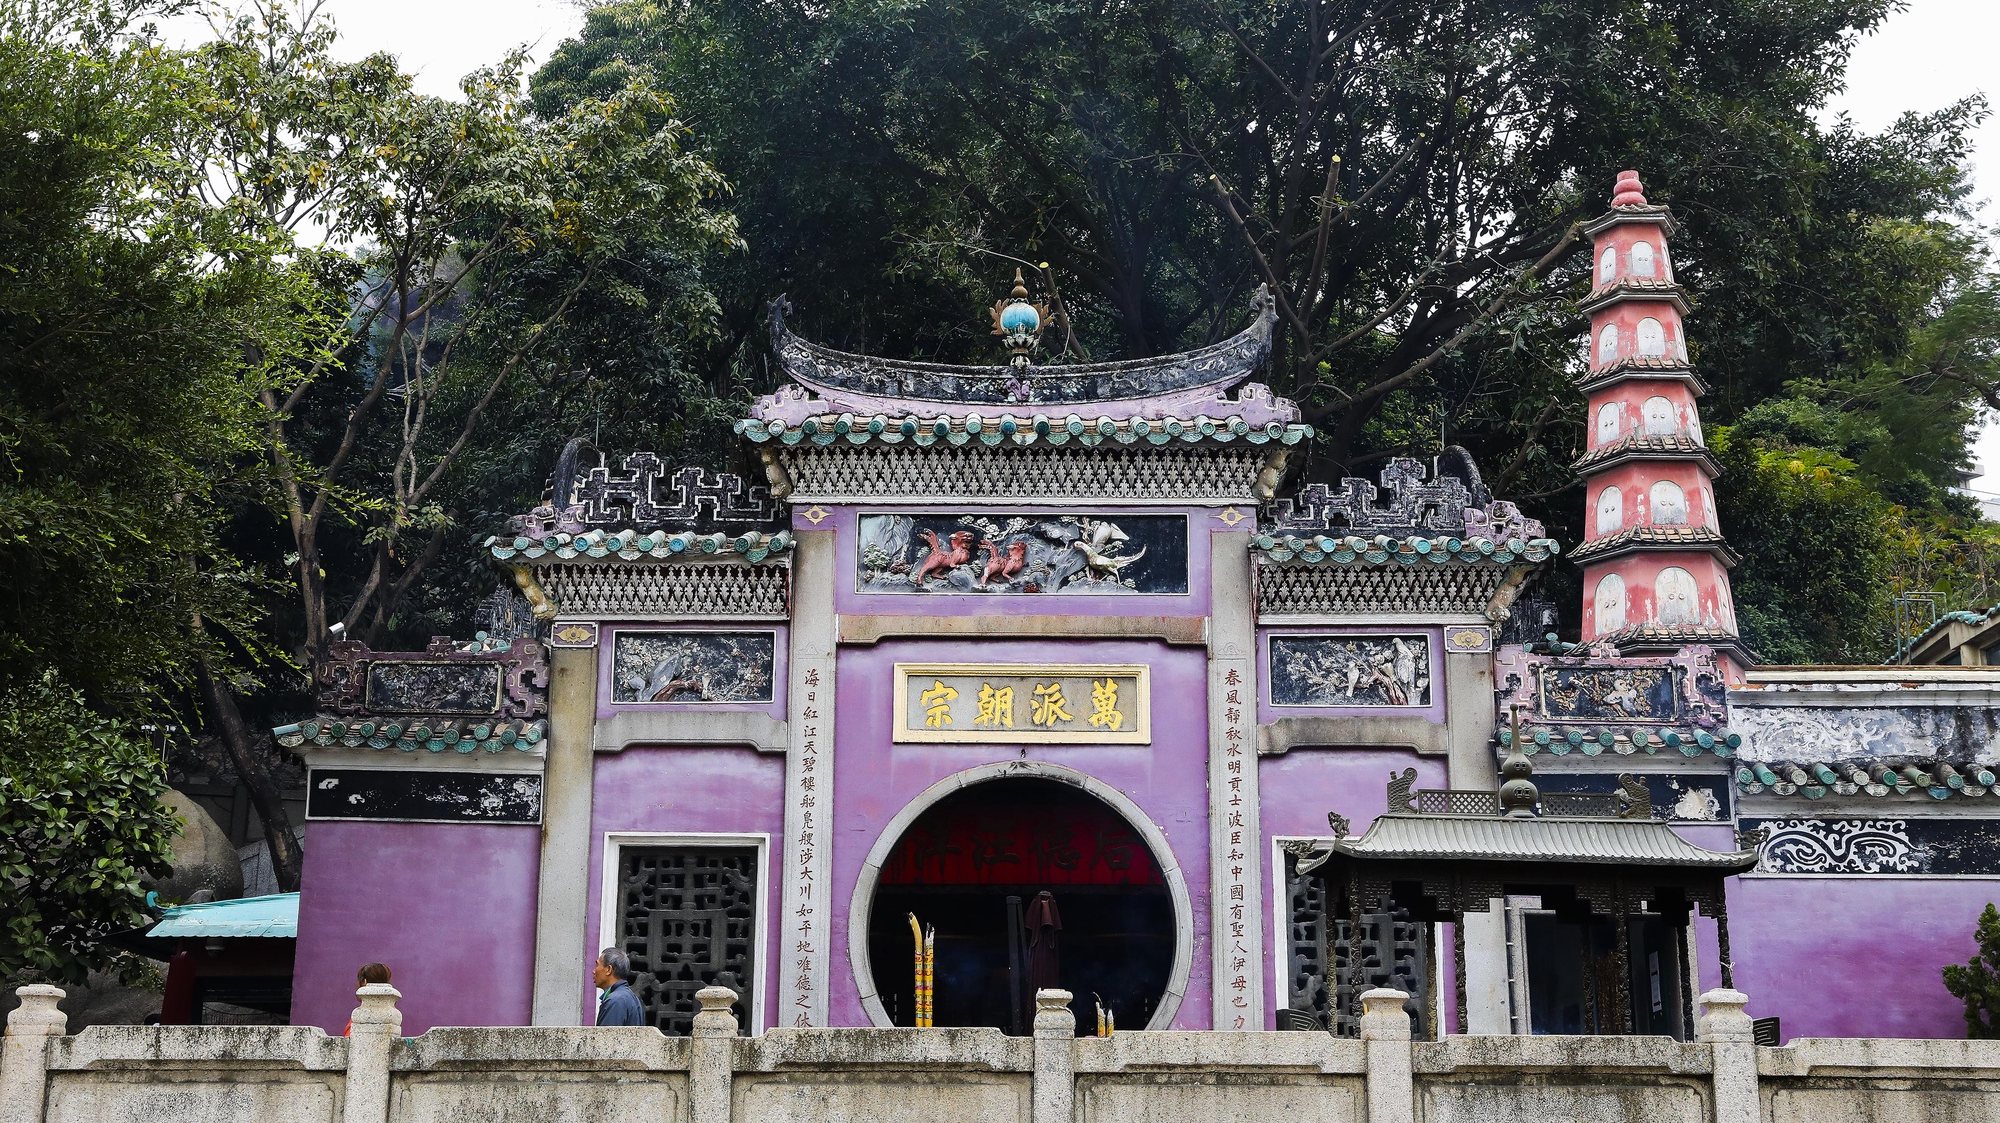 Pavilhão Budista Zhengjiao Chanlin no Templo de A-Má, Deusa protetora dos navegantes em Macau, China.17 de dezembro de 2019. JOÃO RELVAS/LUSA